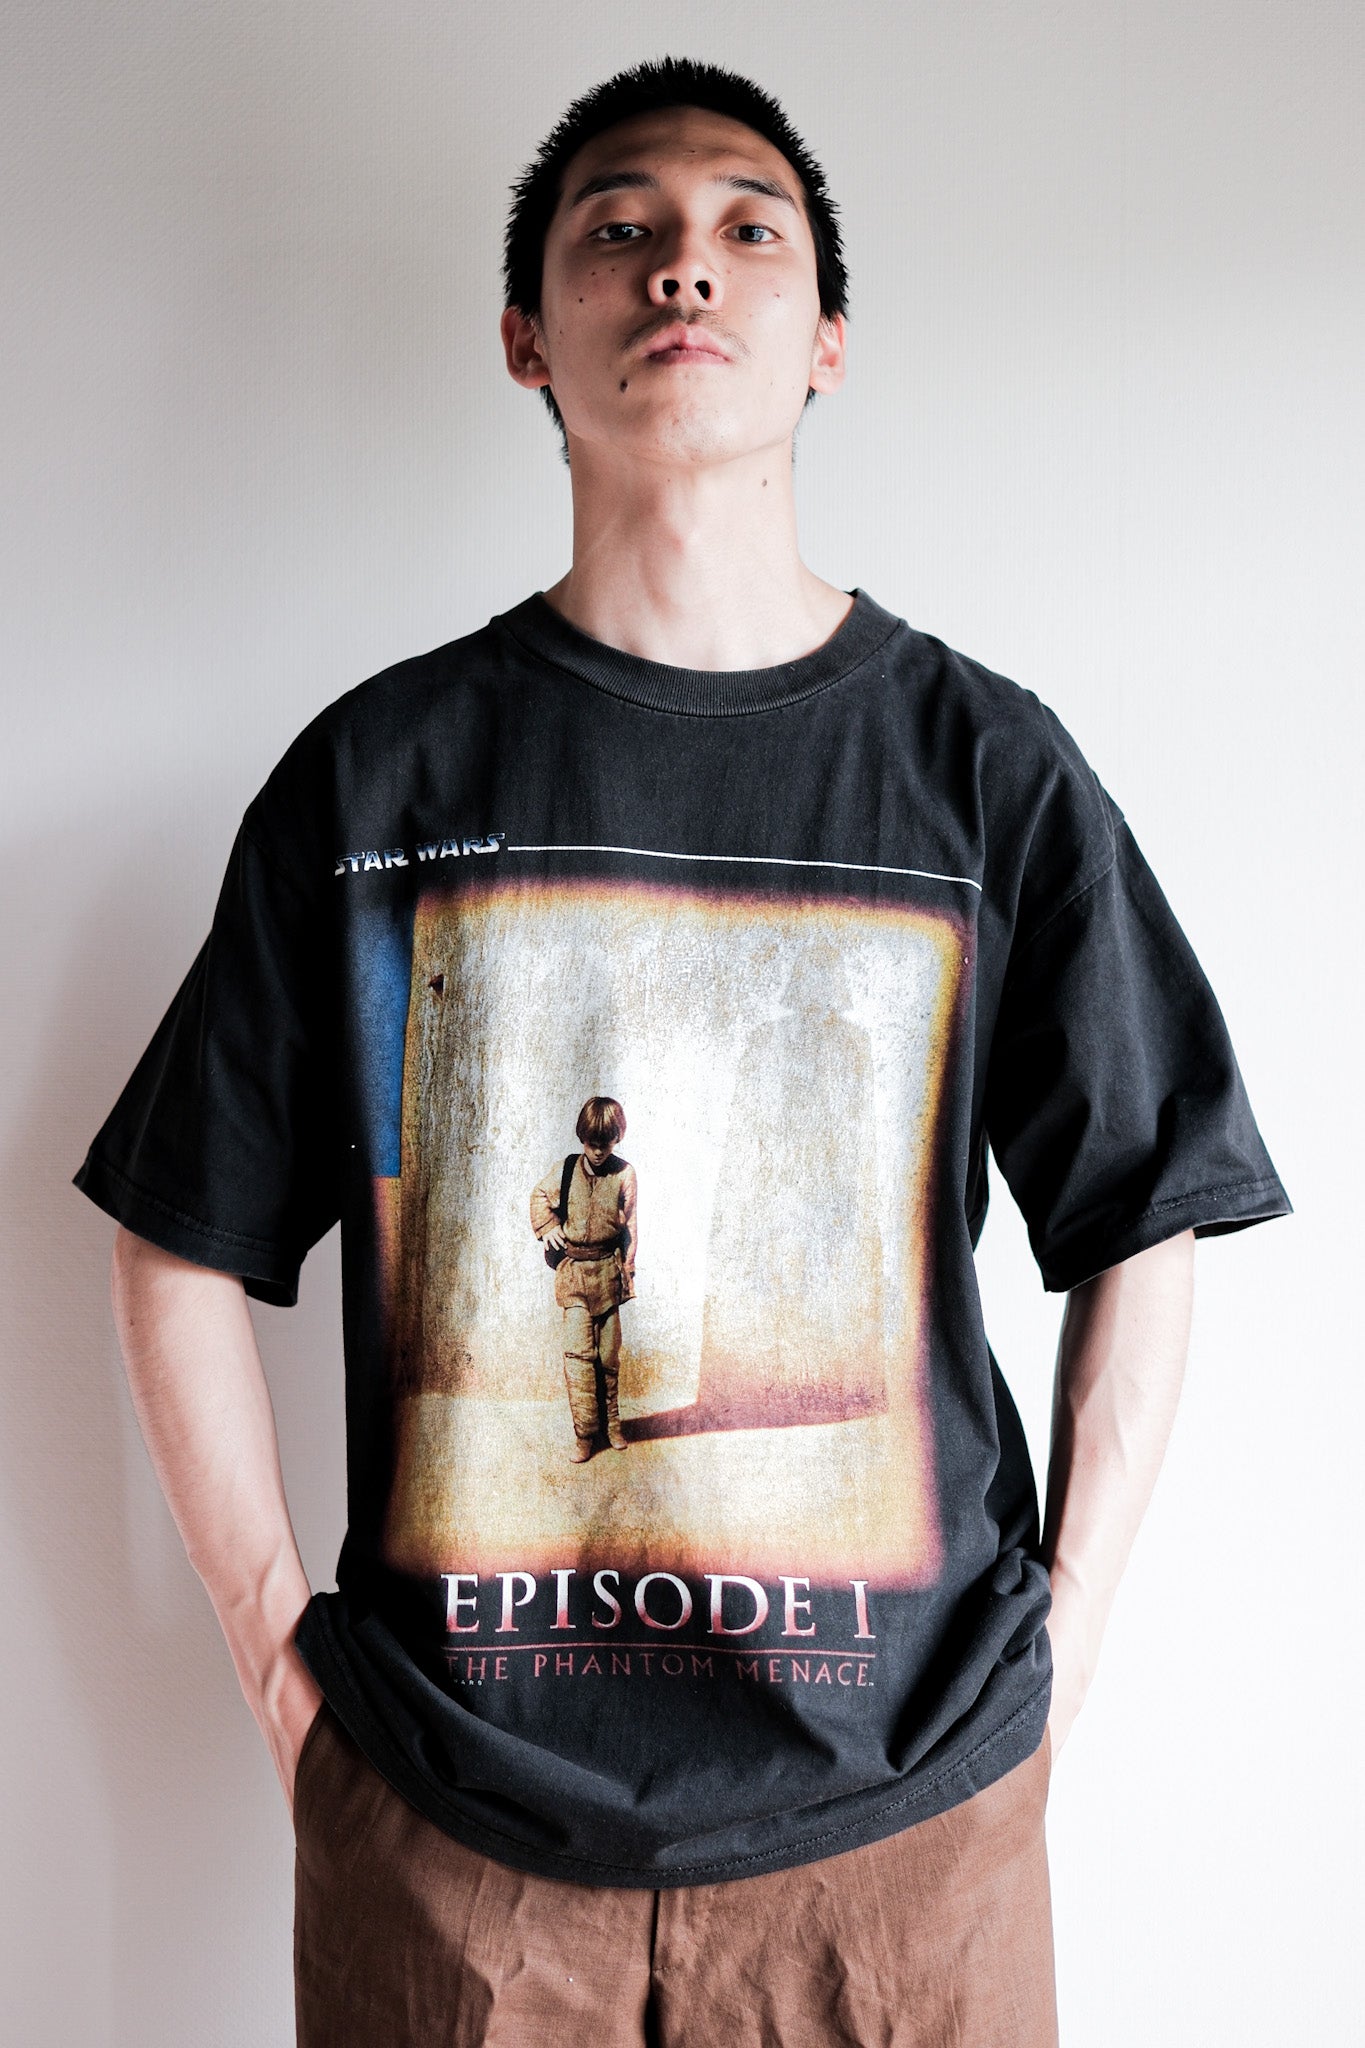 [~ 90 년대] 빈티지 부트 레그 영화 프린트 티셔츠 "스타 워즈 에피소드 I"